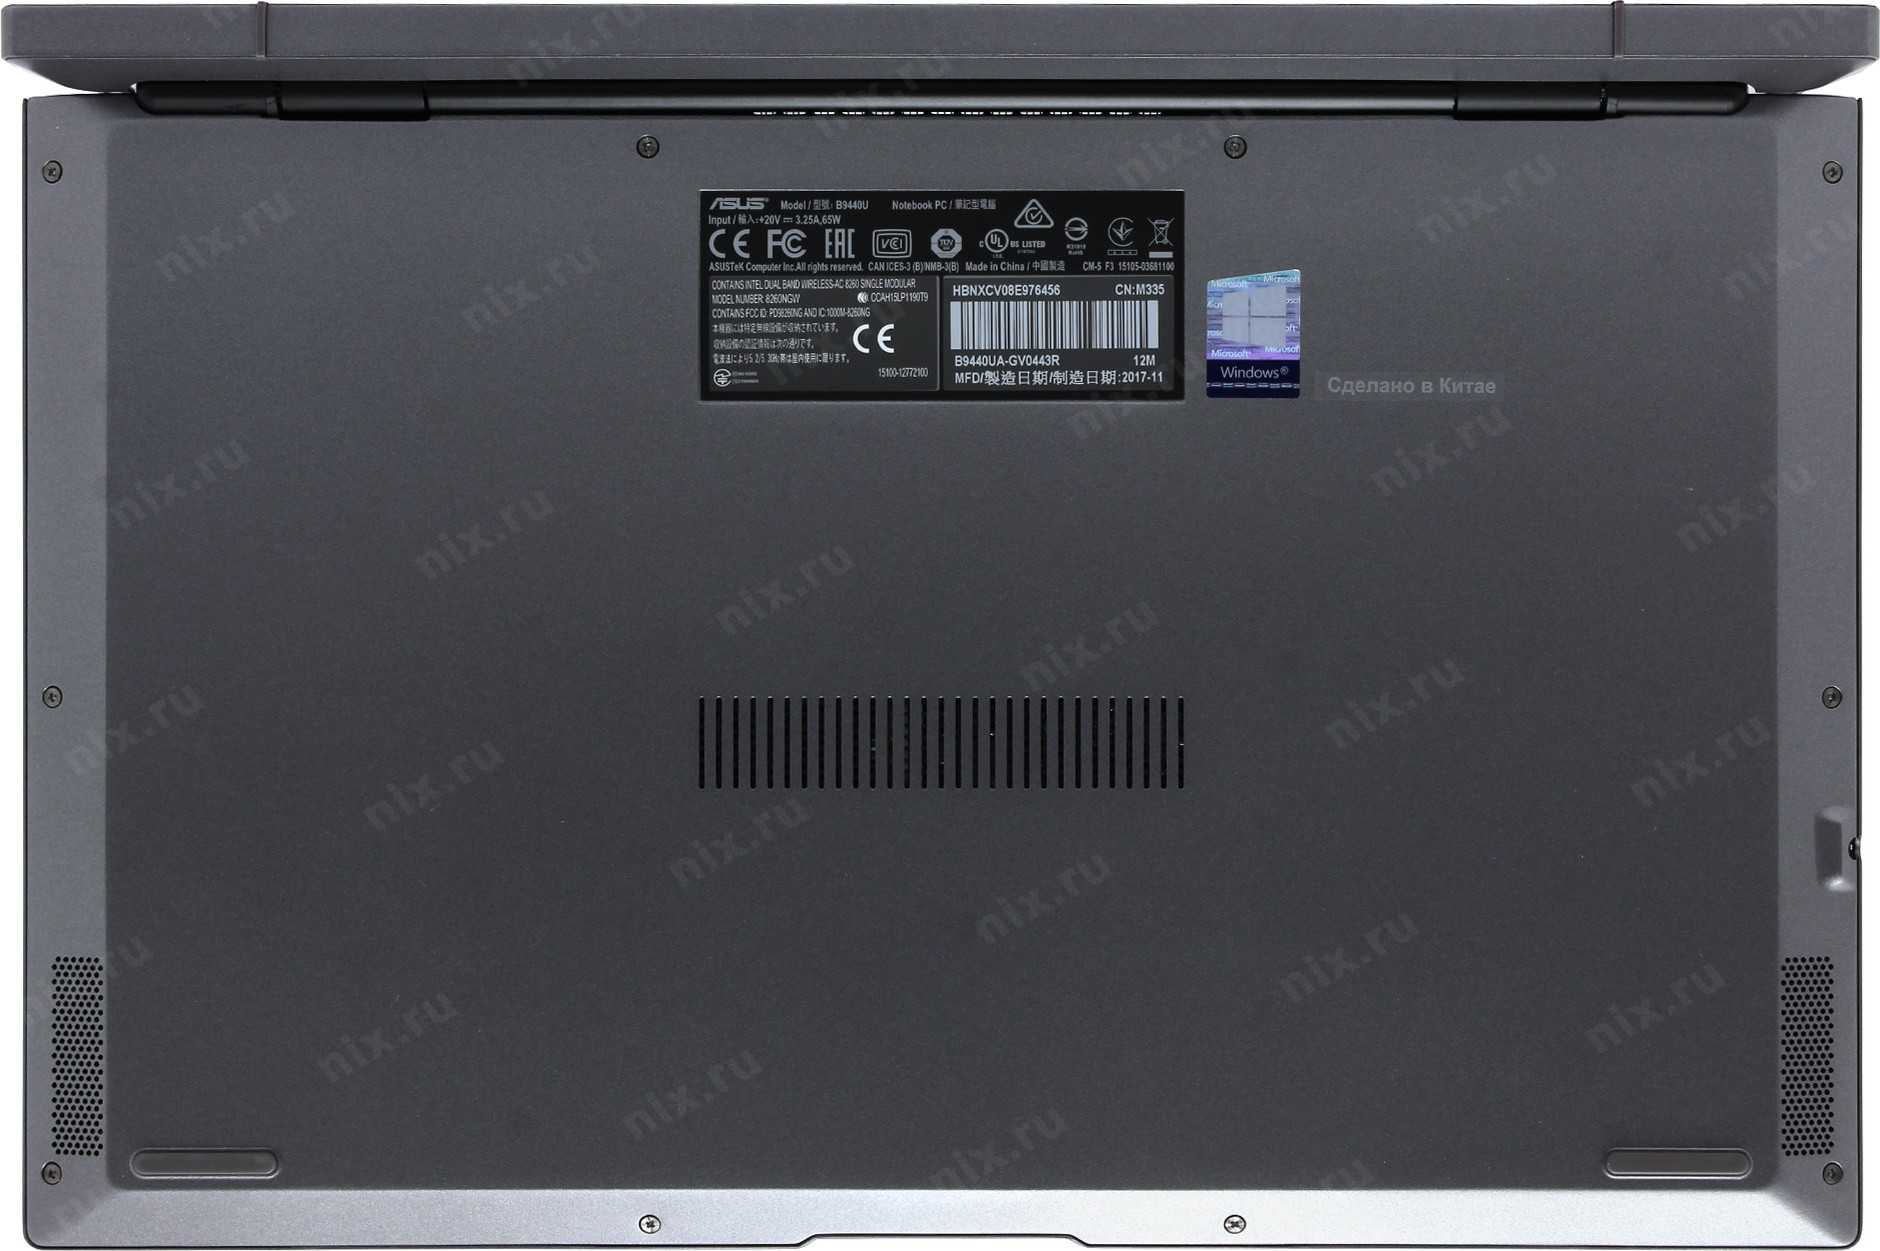 Ноутбук asus pro b9440ua-gv0443r — купить, цена и характеристики, отзывы